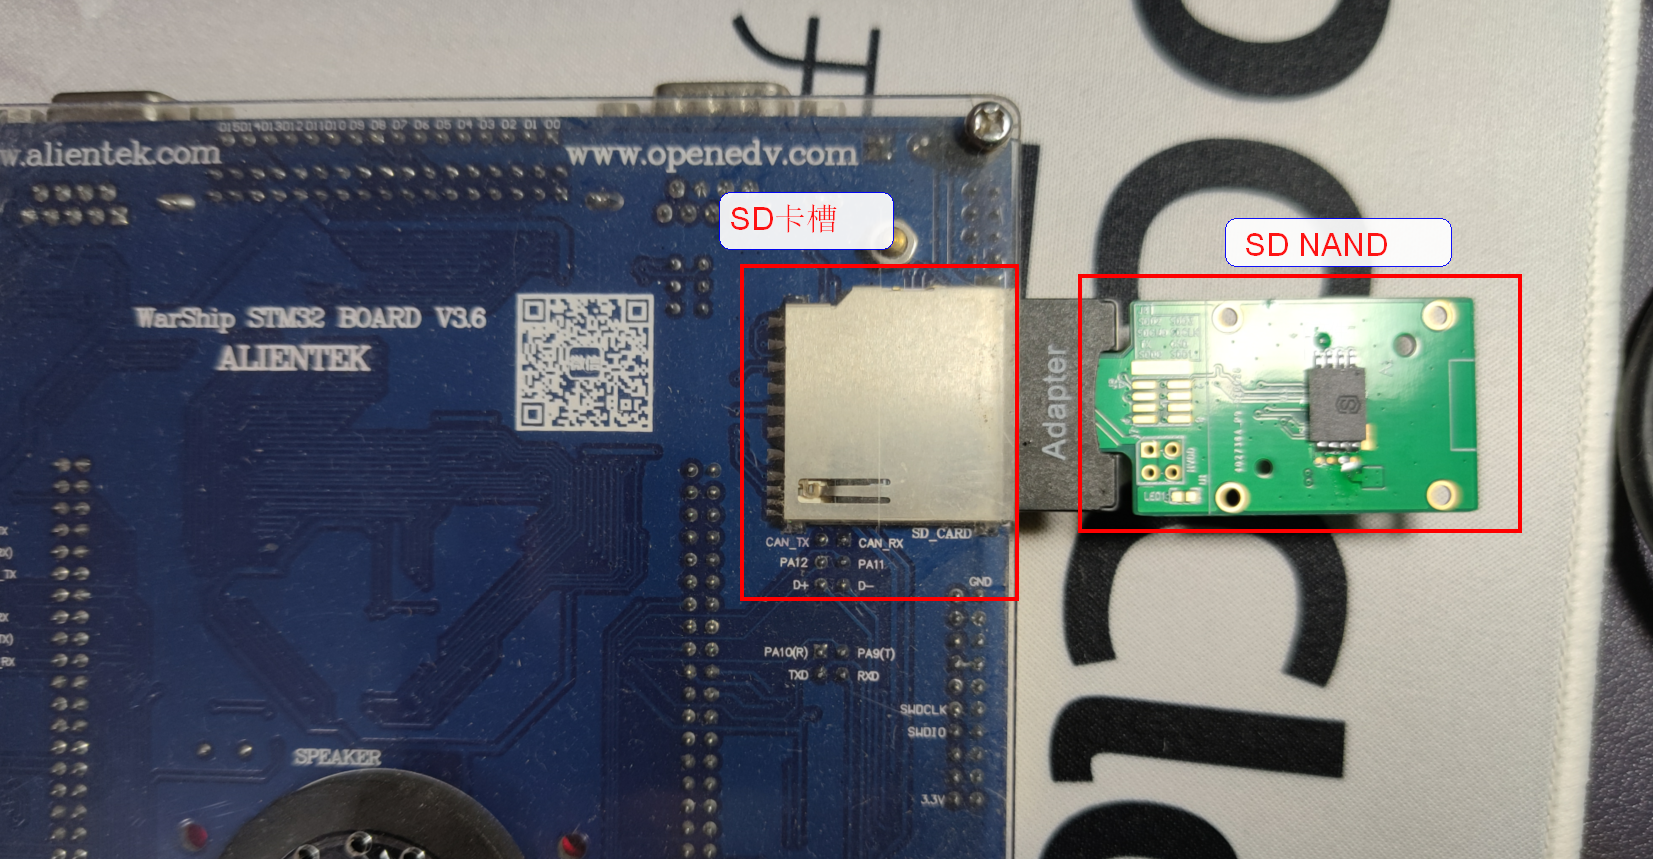 STM32+SD NAND(貼片SD卡)完成FATFS文件系統移植與測試